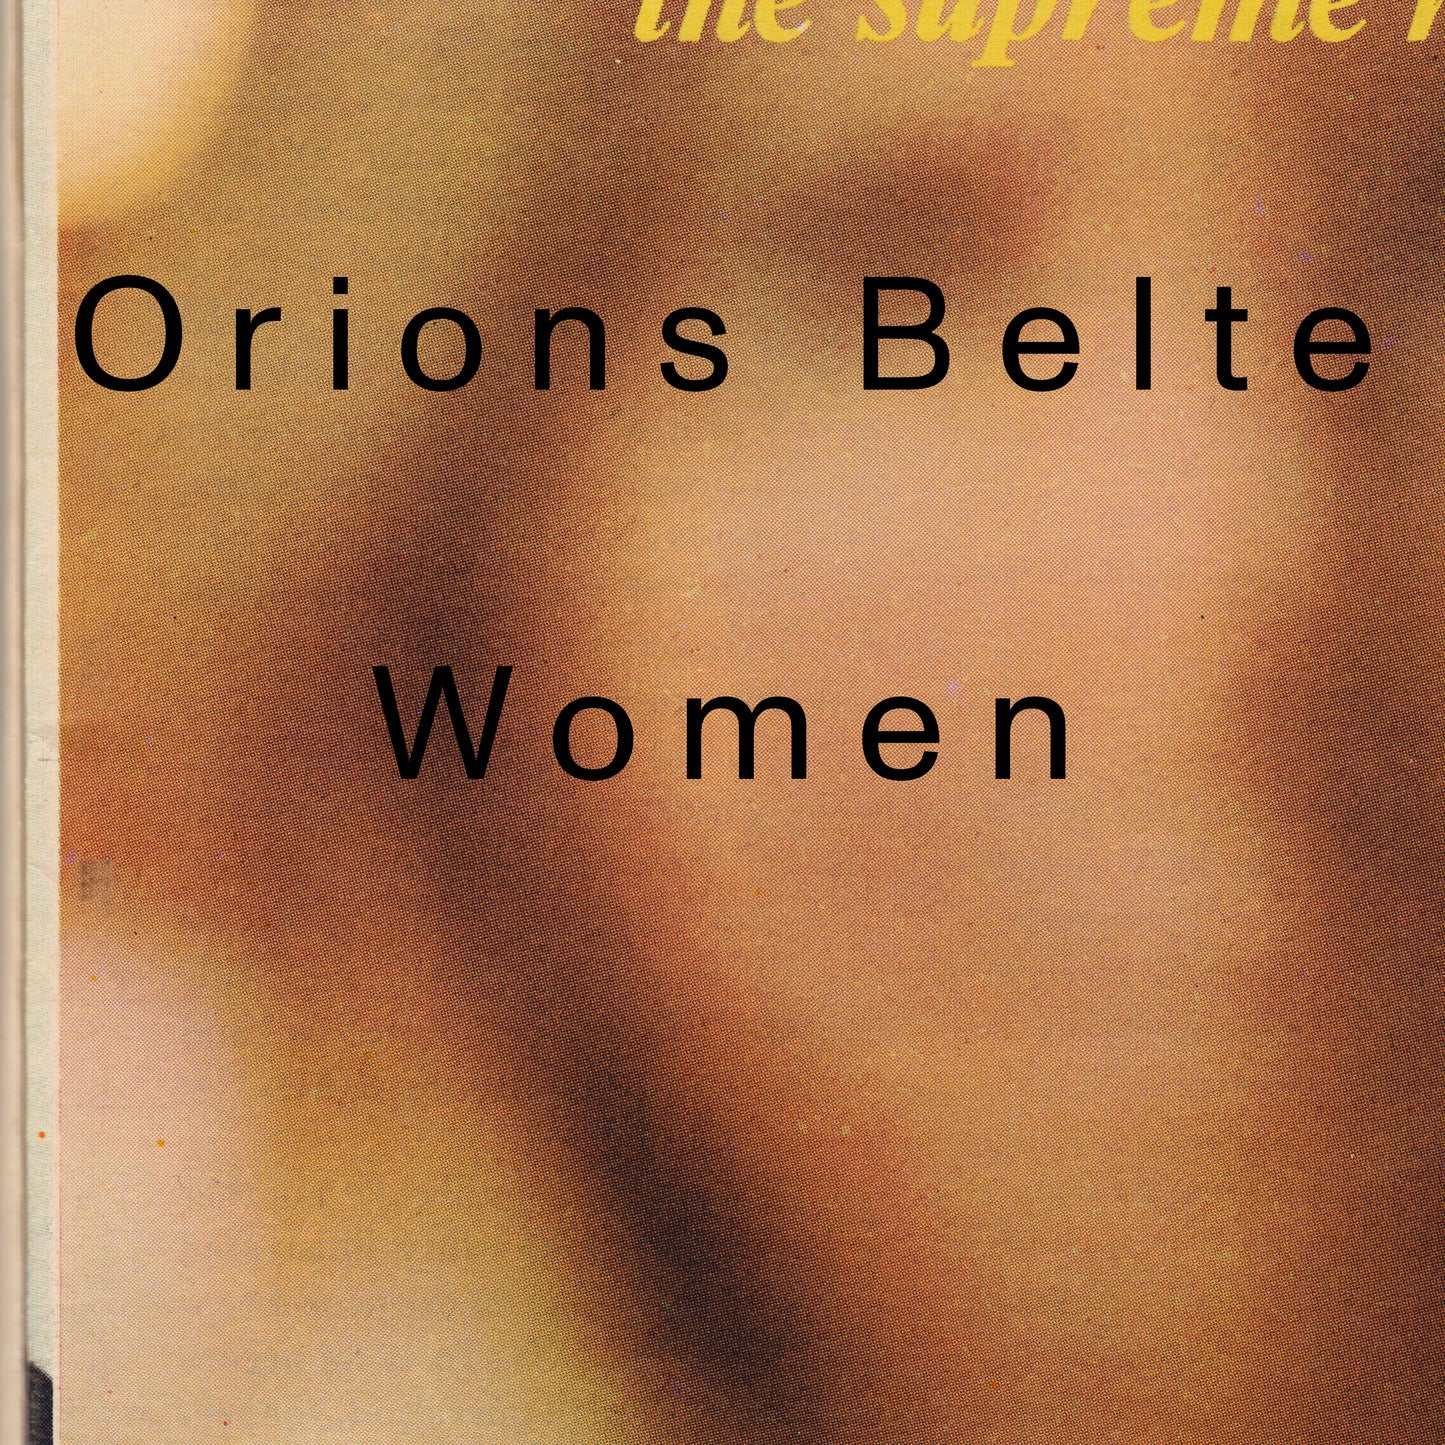 Orions Belte - Women (LP)